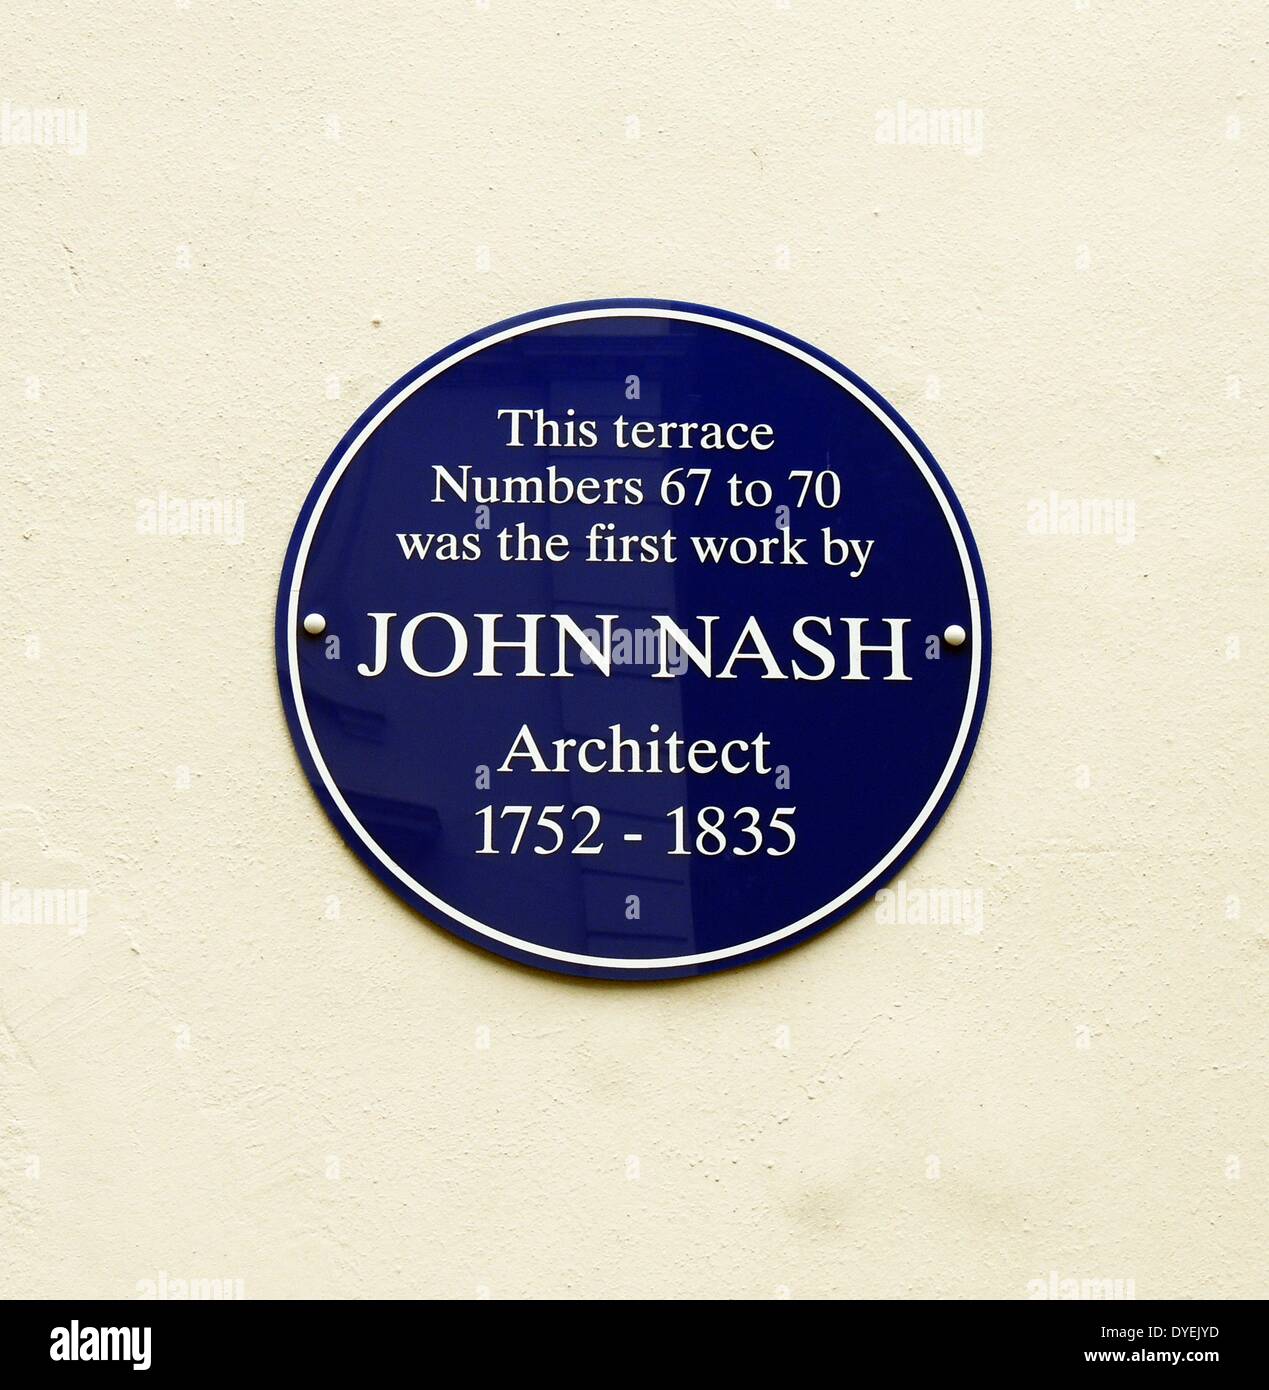 66-71 Great Russell Street London 2013. Première Œuvre indépendante de l'architecte Sir John Nash 1778. Une blue plaque peut être vu commémorant l'œuvre de Nash. Banque D'Images